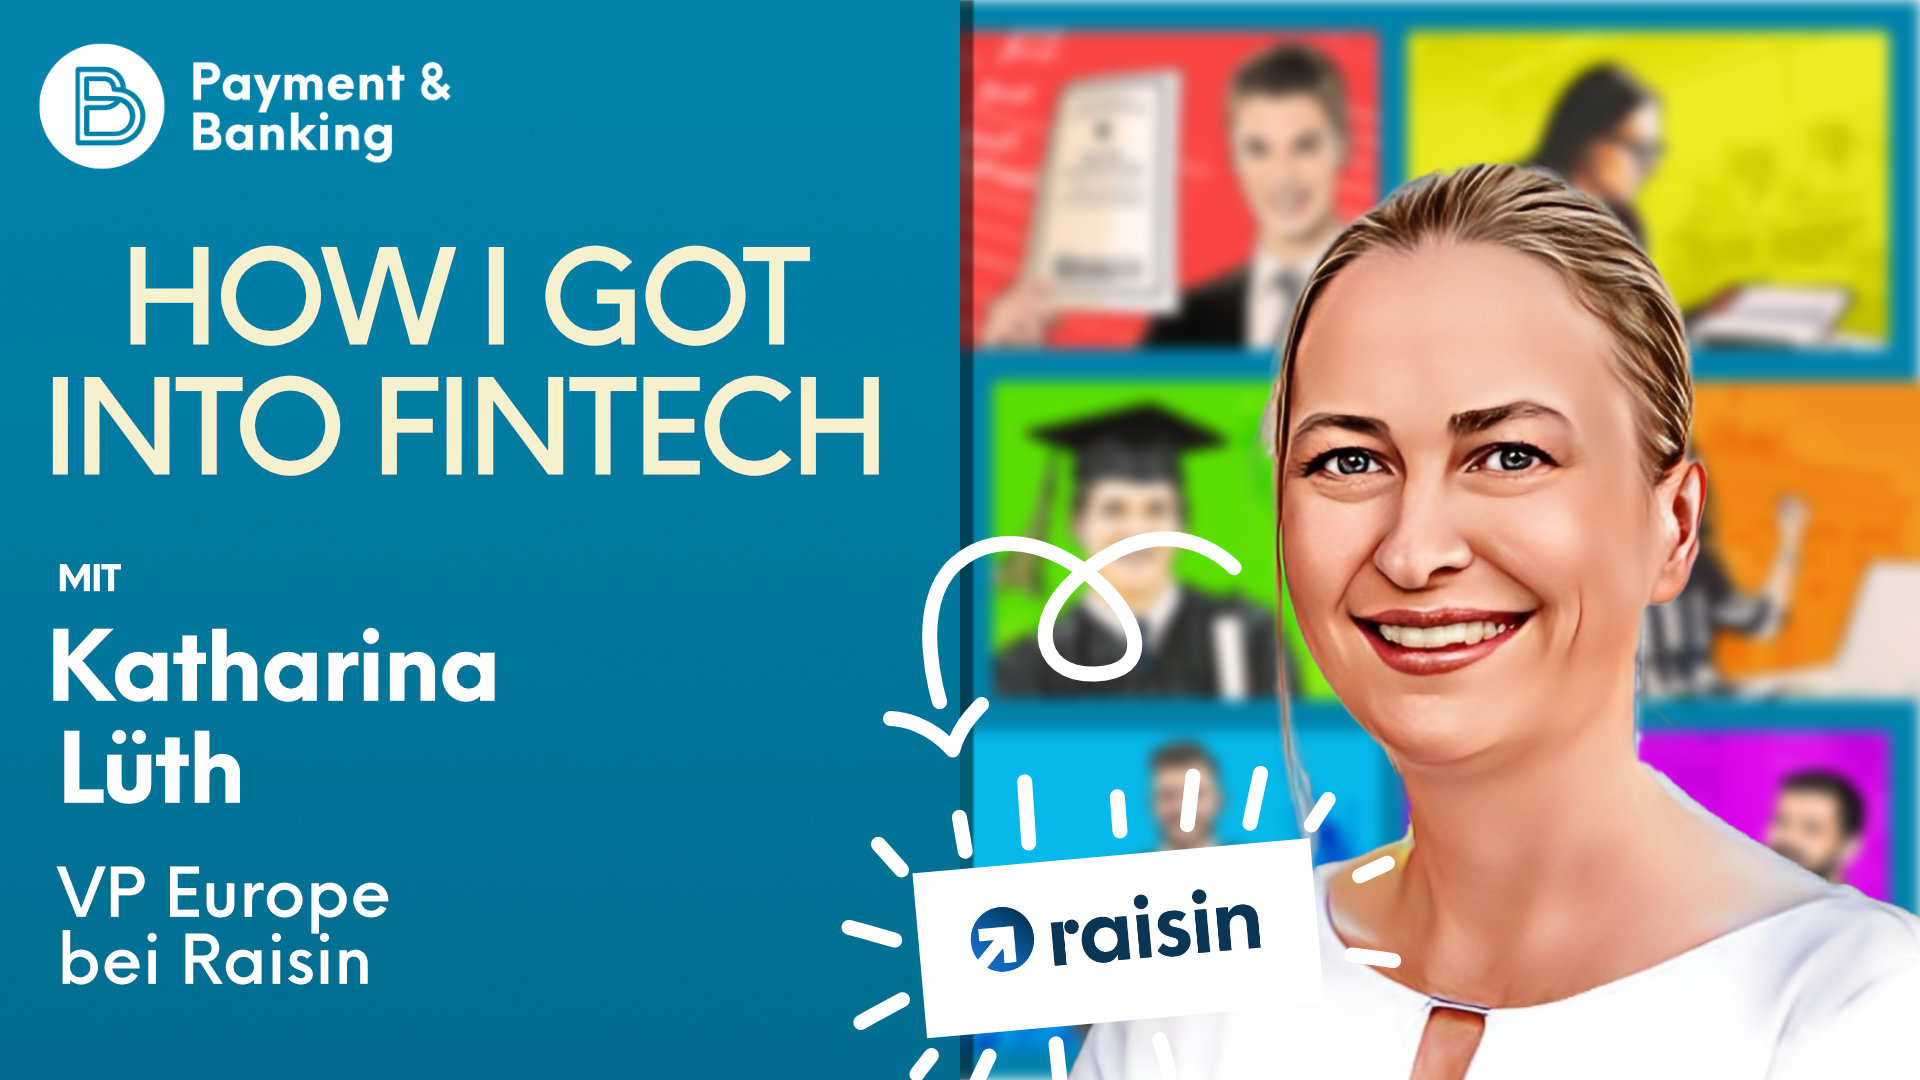 Katharina Lüth ist Vice President of Europe bei Raisin DS GmbH und Vorsitzende von Raisin UK. In der neuen Ausgabe von How I Got Into Fintech spricht sie darüber, wie sie diese Position erreichen konnte und zeichnet ihren Werdegang nach. Wertvolle Tipps und Ratschläge inklusive!